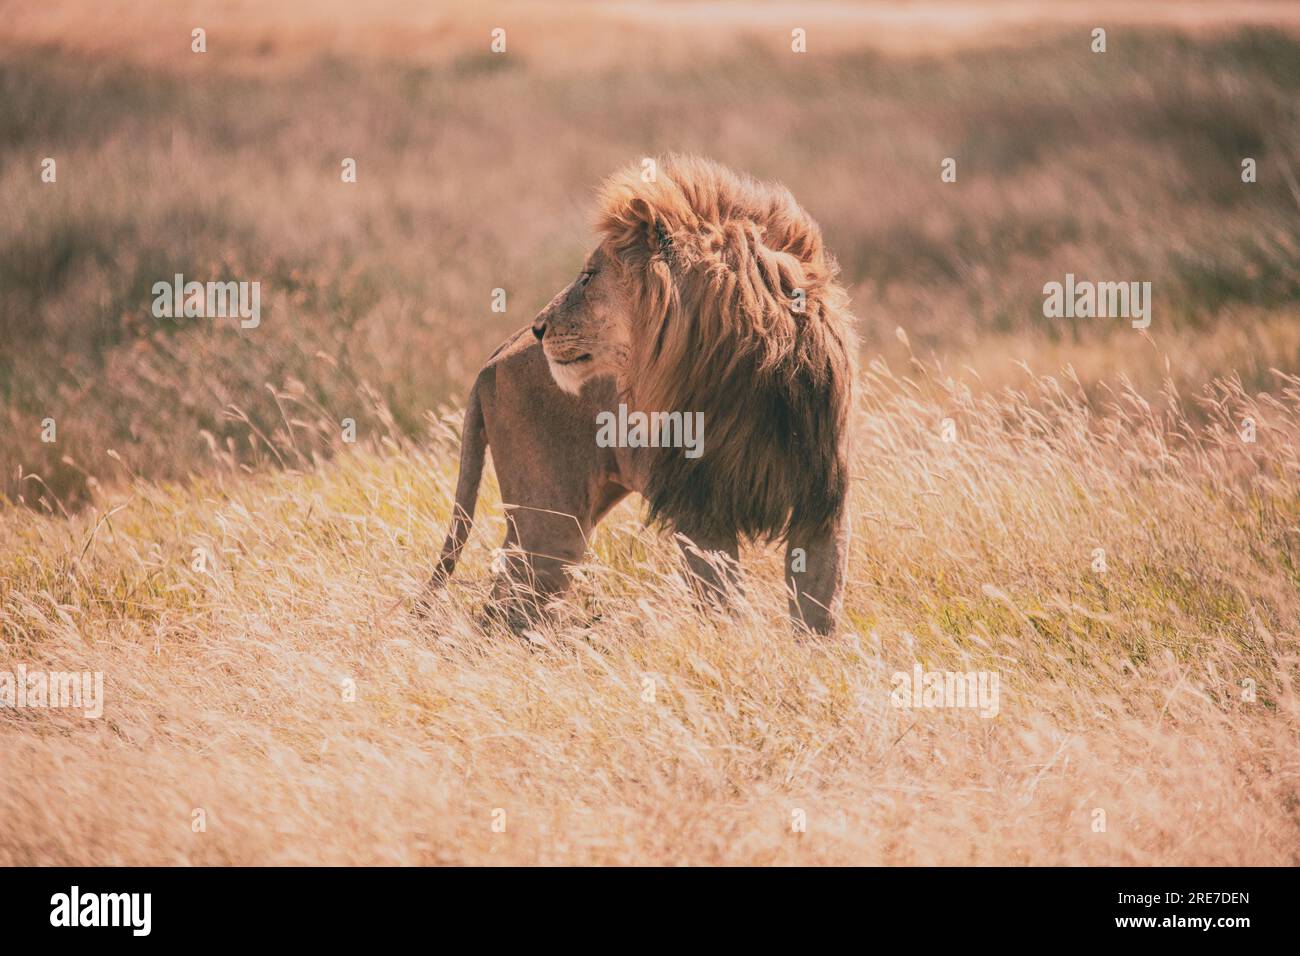 Admirez le lion royal, le vrai roi de la savane, exsudant puissance et équilibre dans son habitat naturel. Banque D'Images